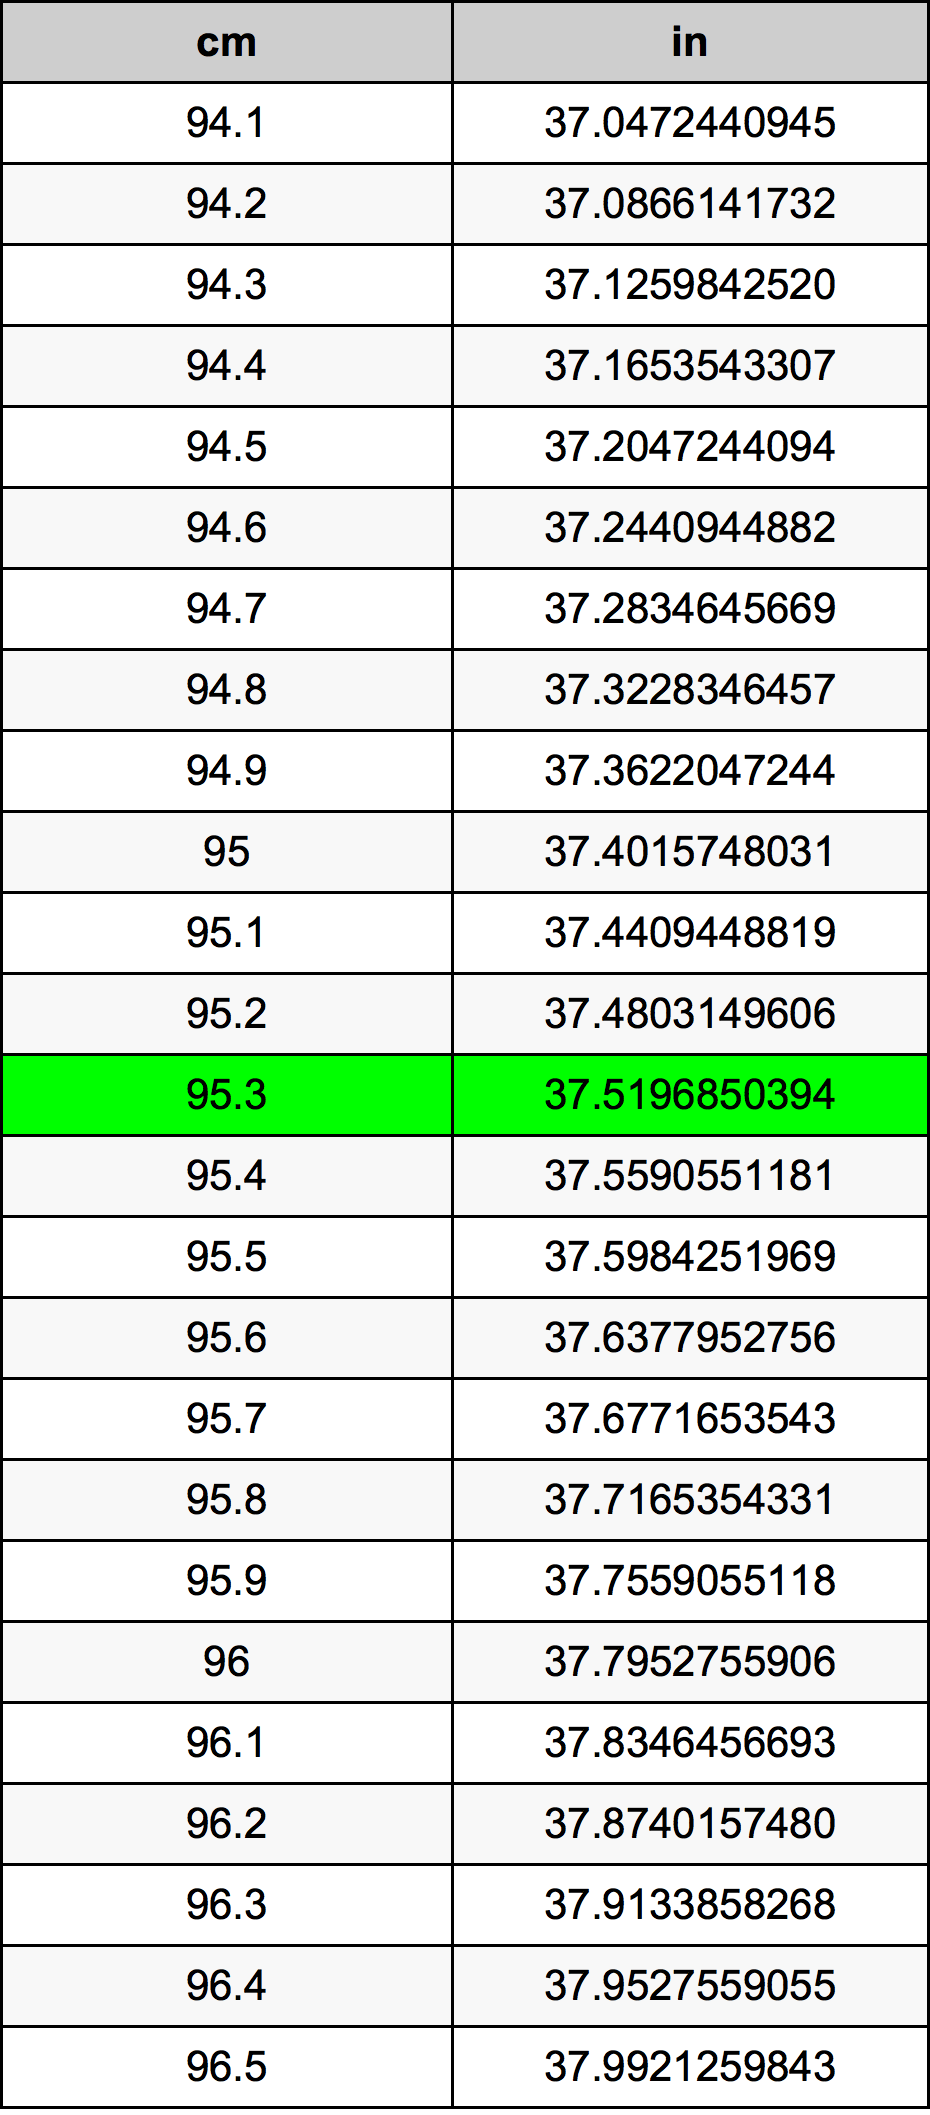 95.3 Centiméter átszámítási táblázat